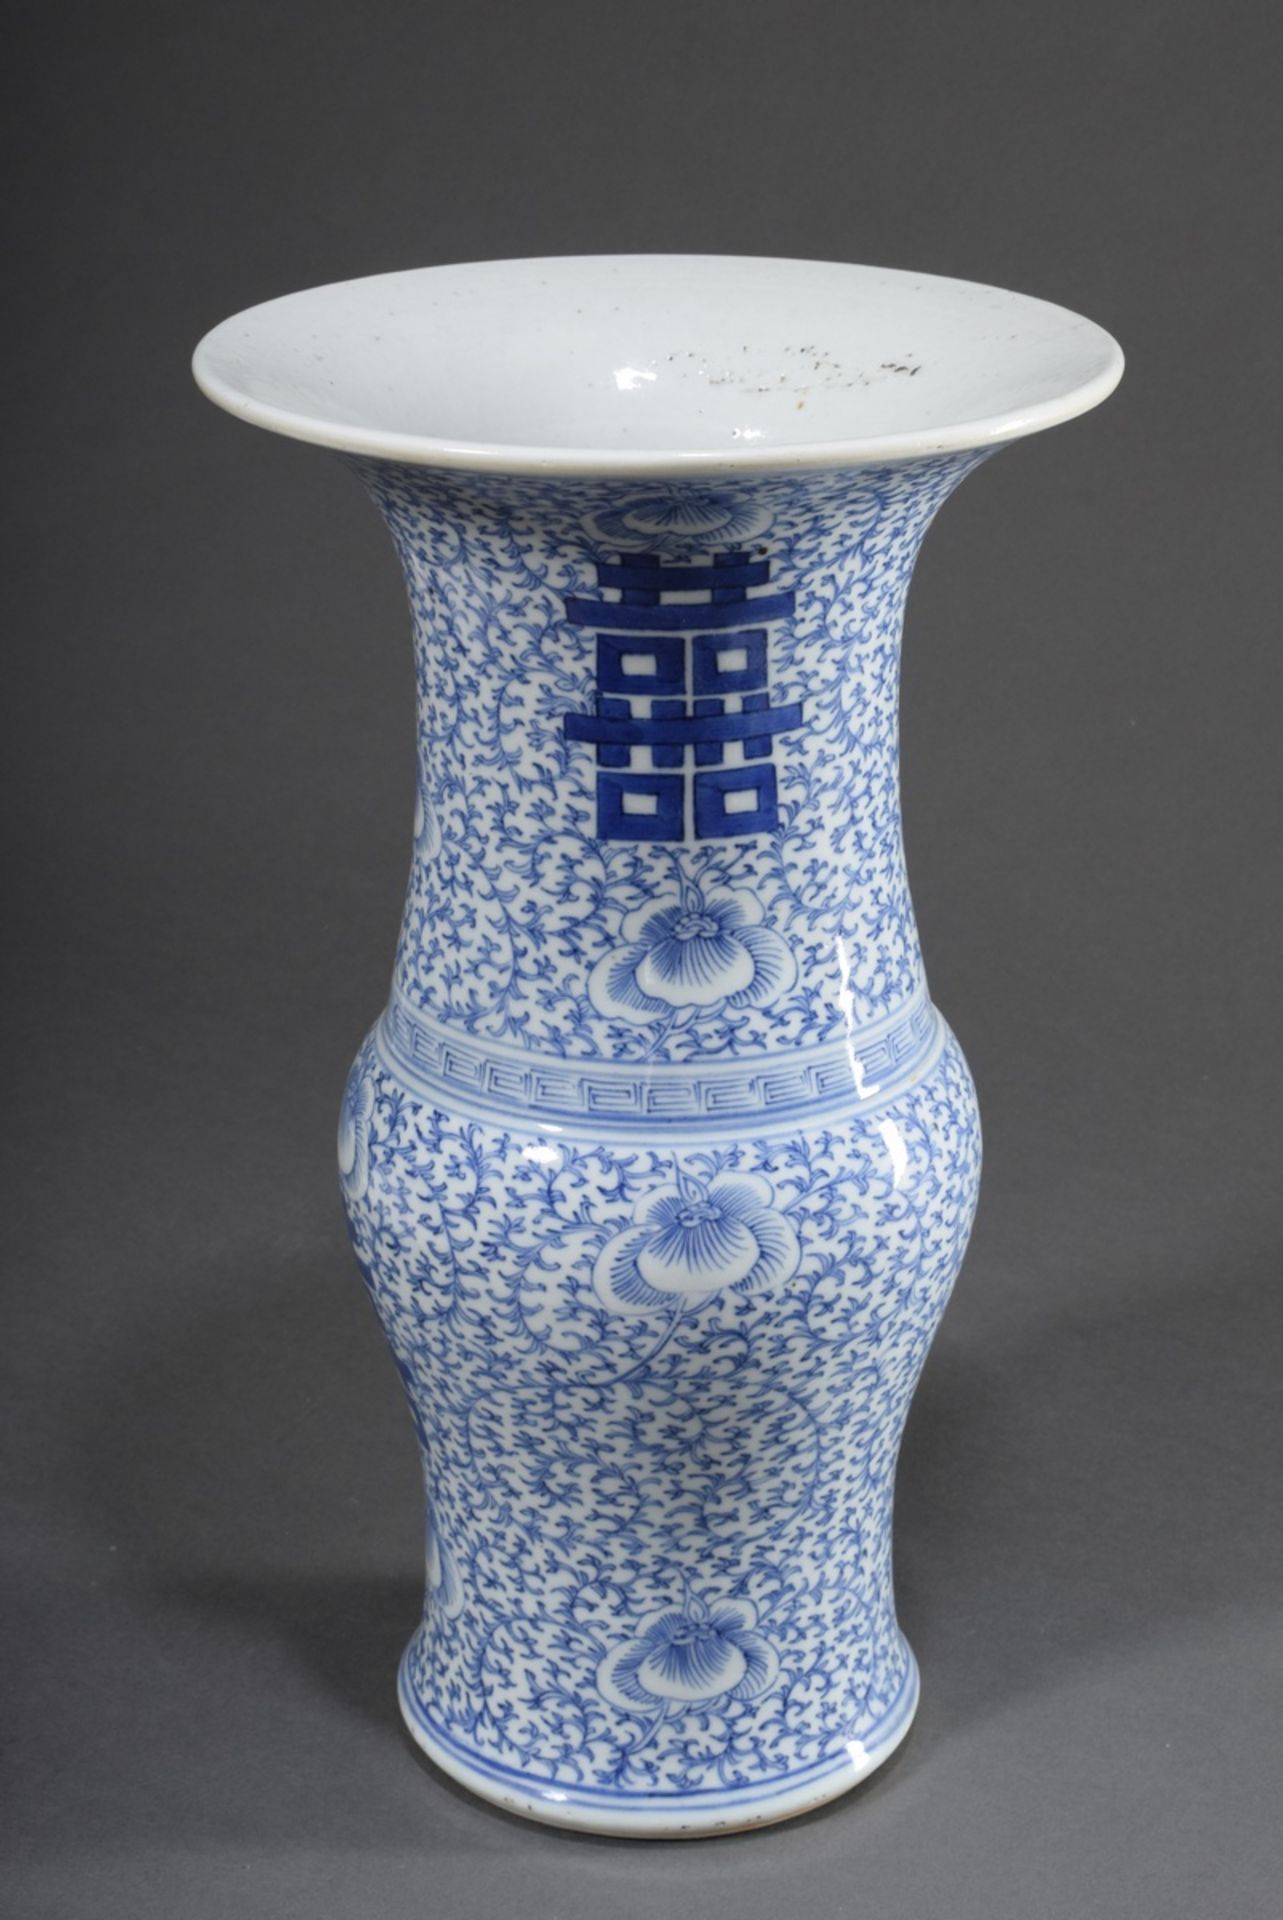 Chinesische Porzellan "Gu" Vase mit Blaumalerei "Glückszeichen" auf floralem Fond, H. 41cm, Ø 24cm - Bild 3 aus 6